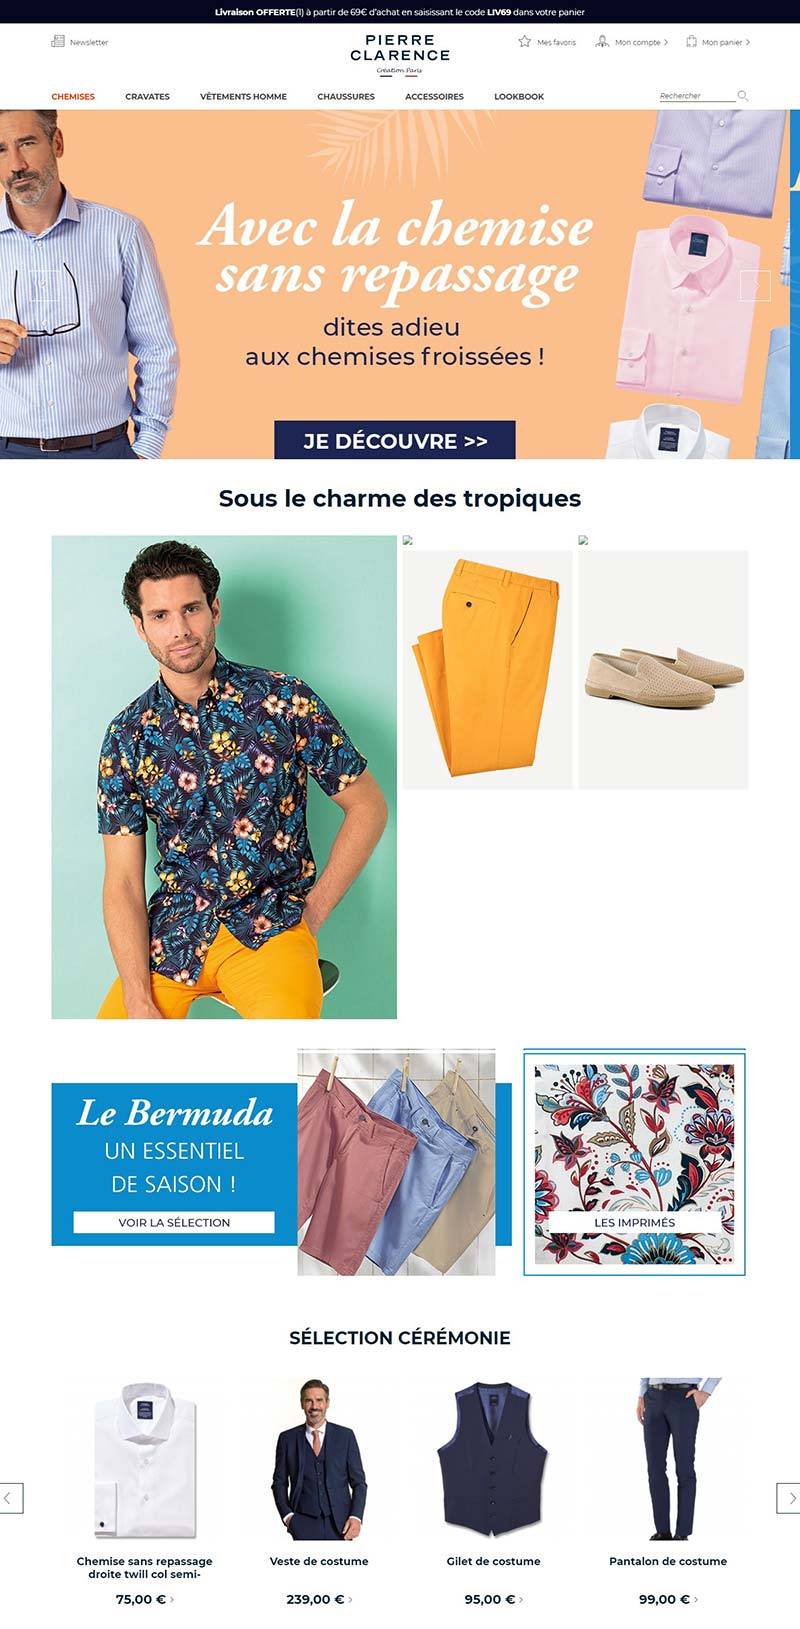 Pierre clarence 法国高档时装品牌购物网站